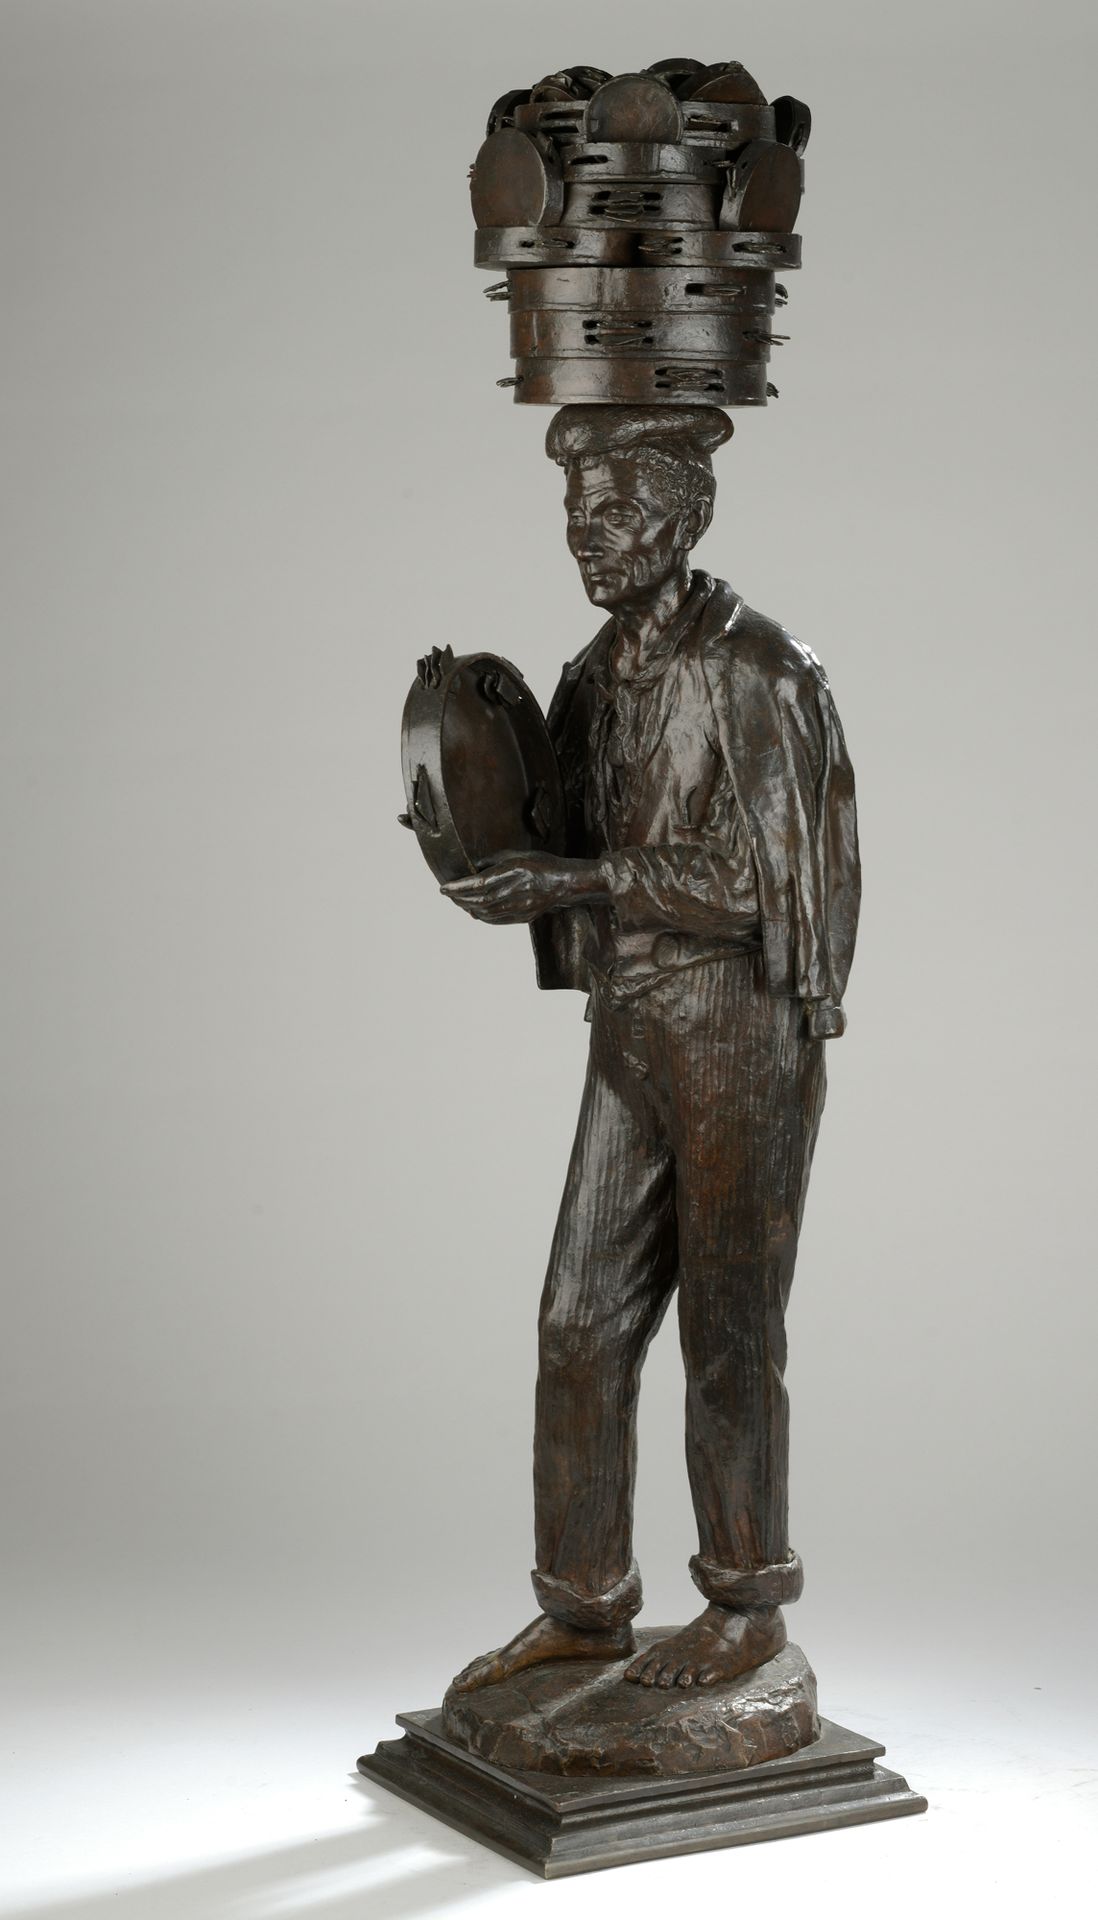 Null 朱斯蒂诺-莱昂内（19世纪活跃于那不勒斯）。

卖手鼓的人

带有浅棕色铜锈的青铜器

签名和日期 "G Leone/1878年10月16日（？

H&hellip;